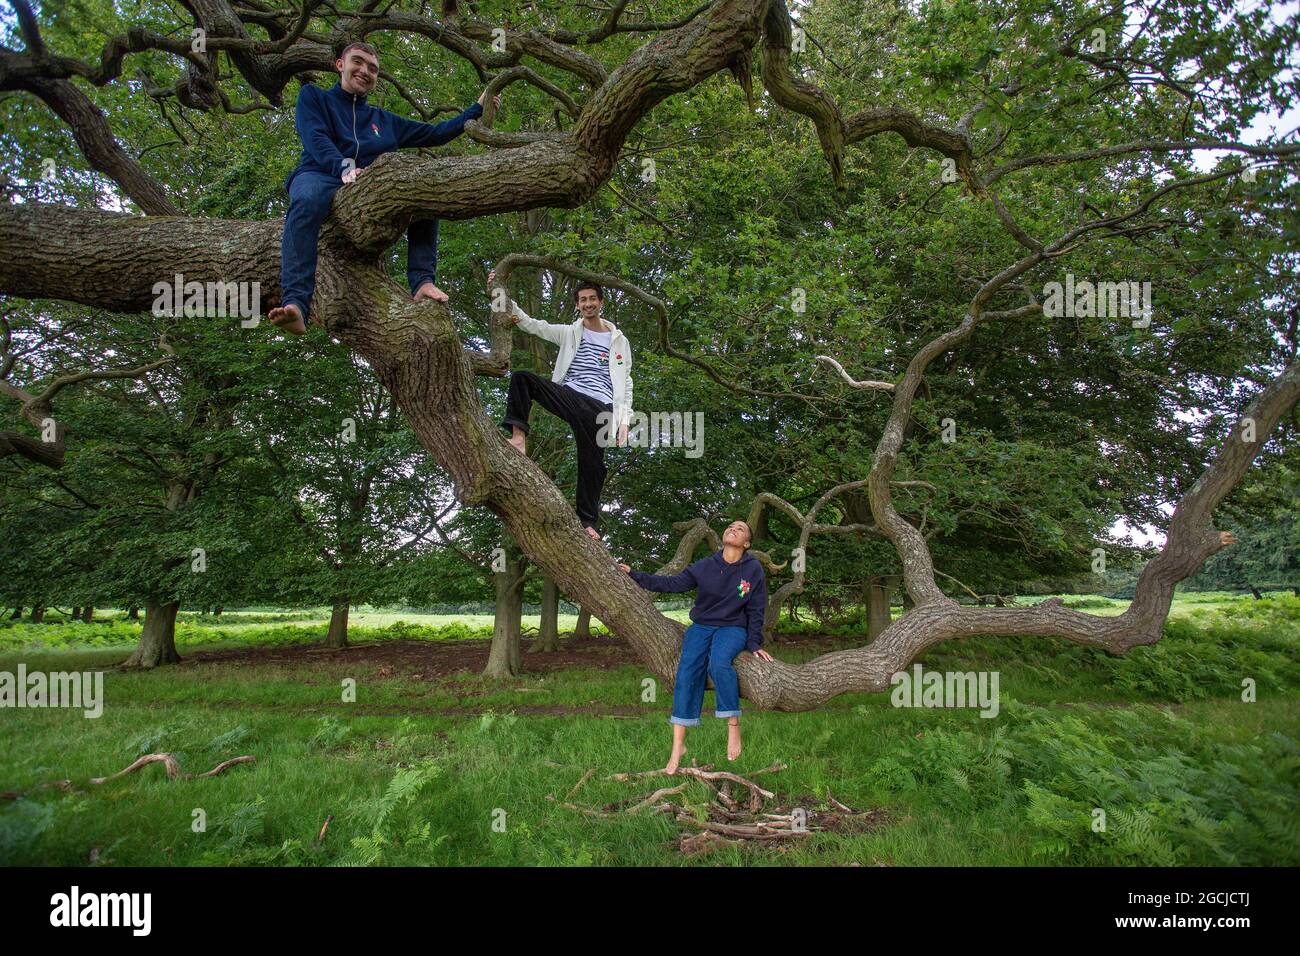 Grupo de jóvenes en el parque subiendo un árbol Foto de stock